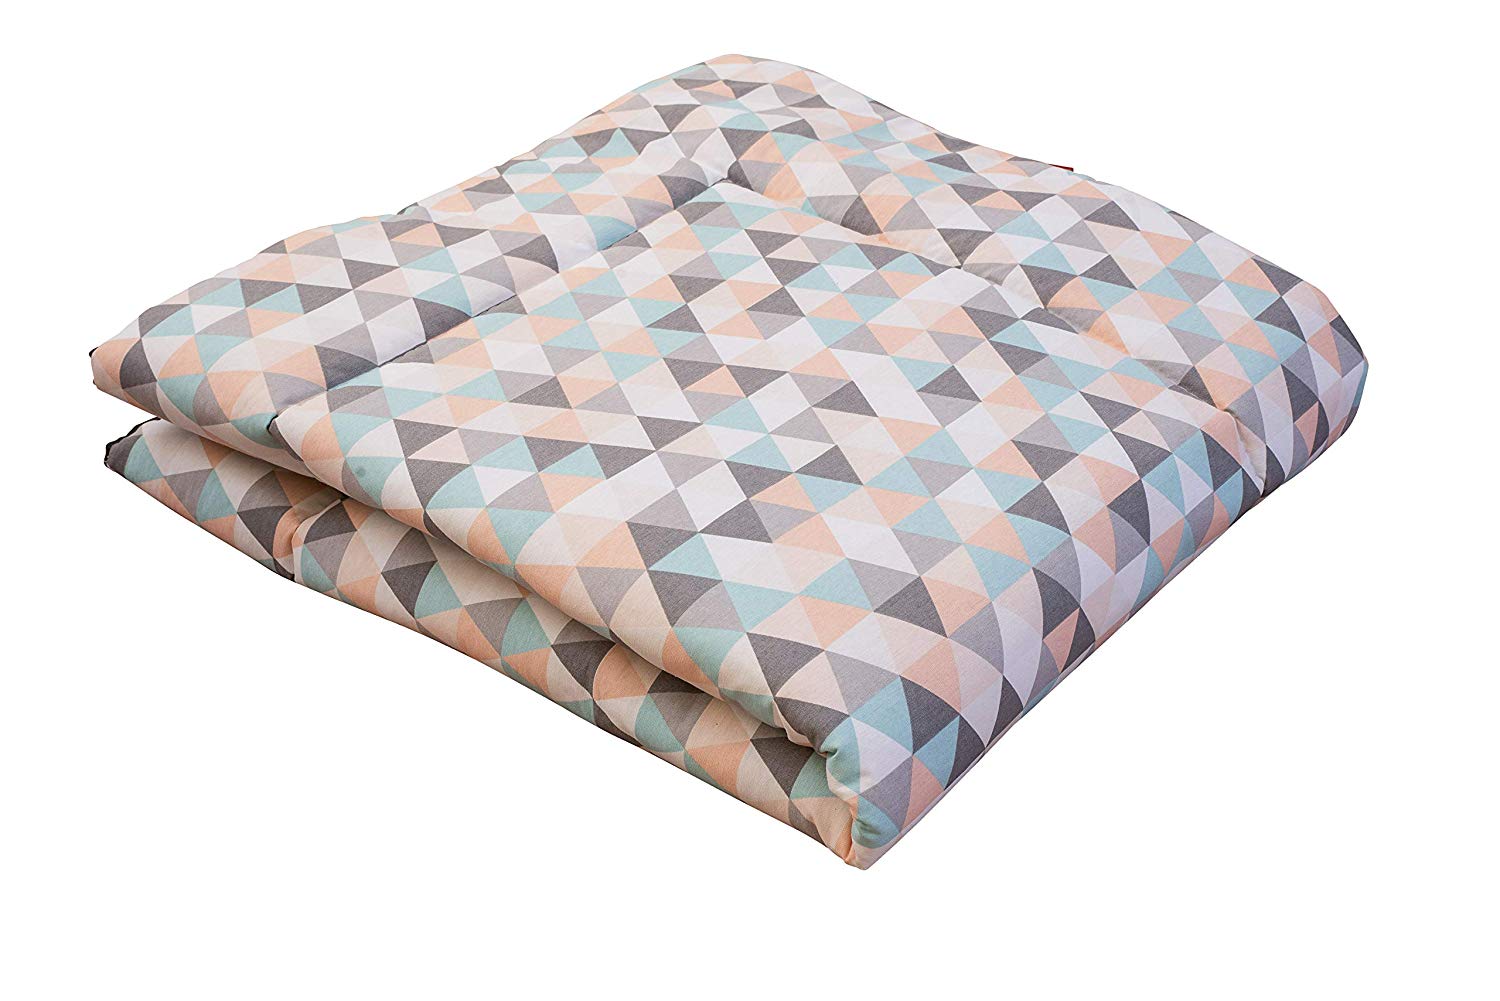 Ideenreich 2389 King Crawling Blanket 135 x 150 cm, Multi-Colour